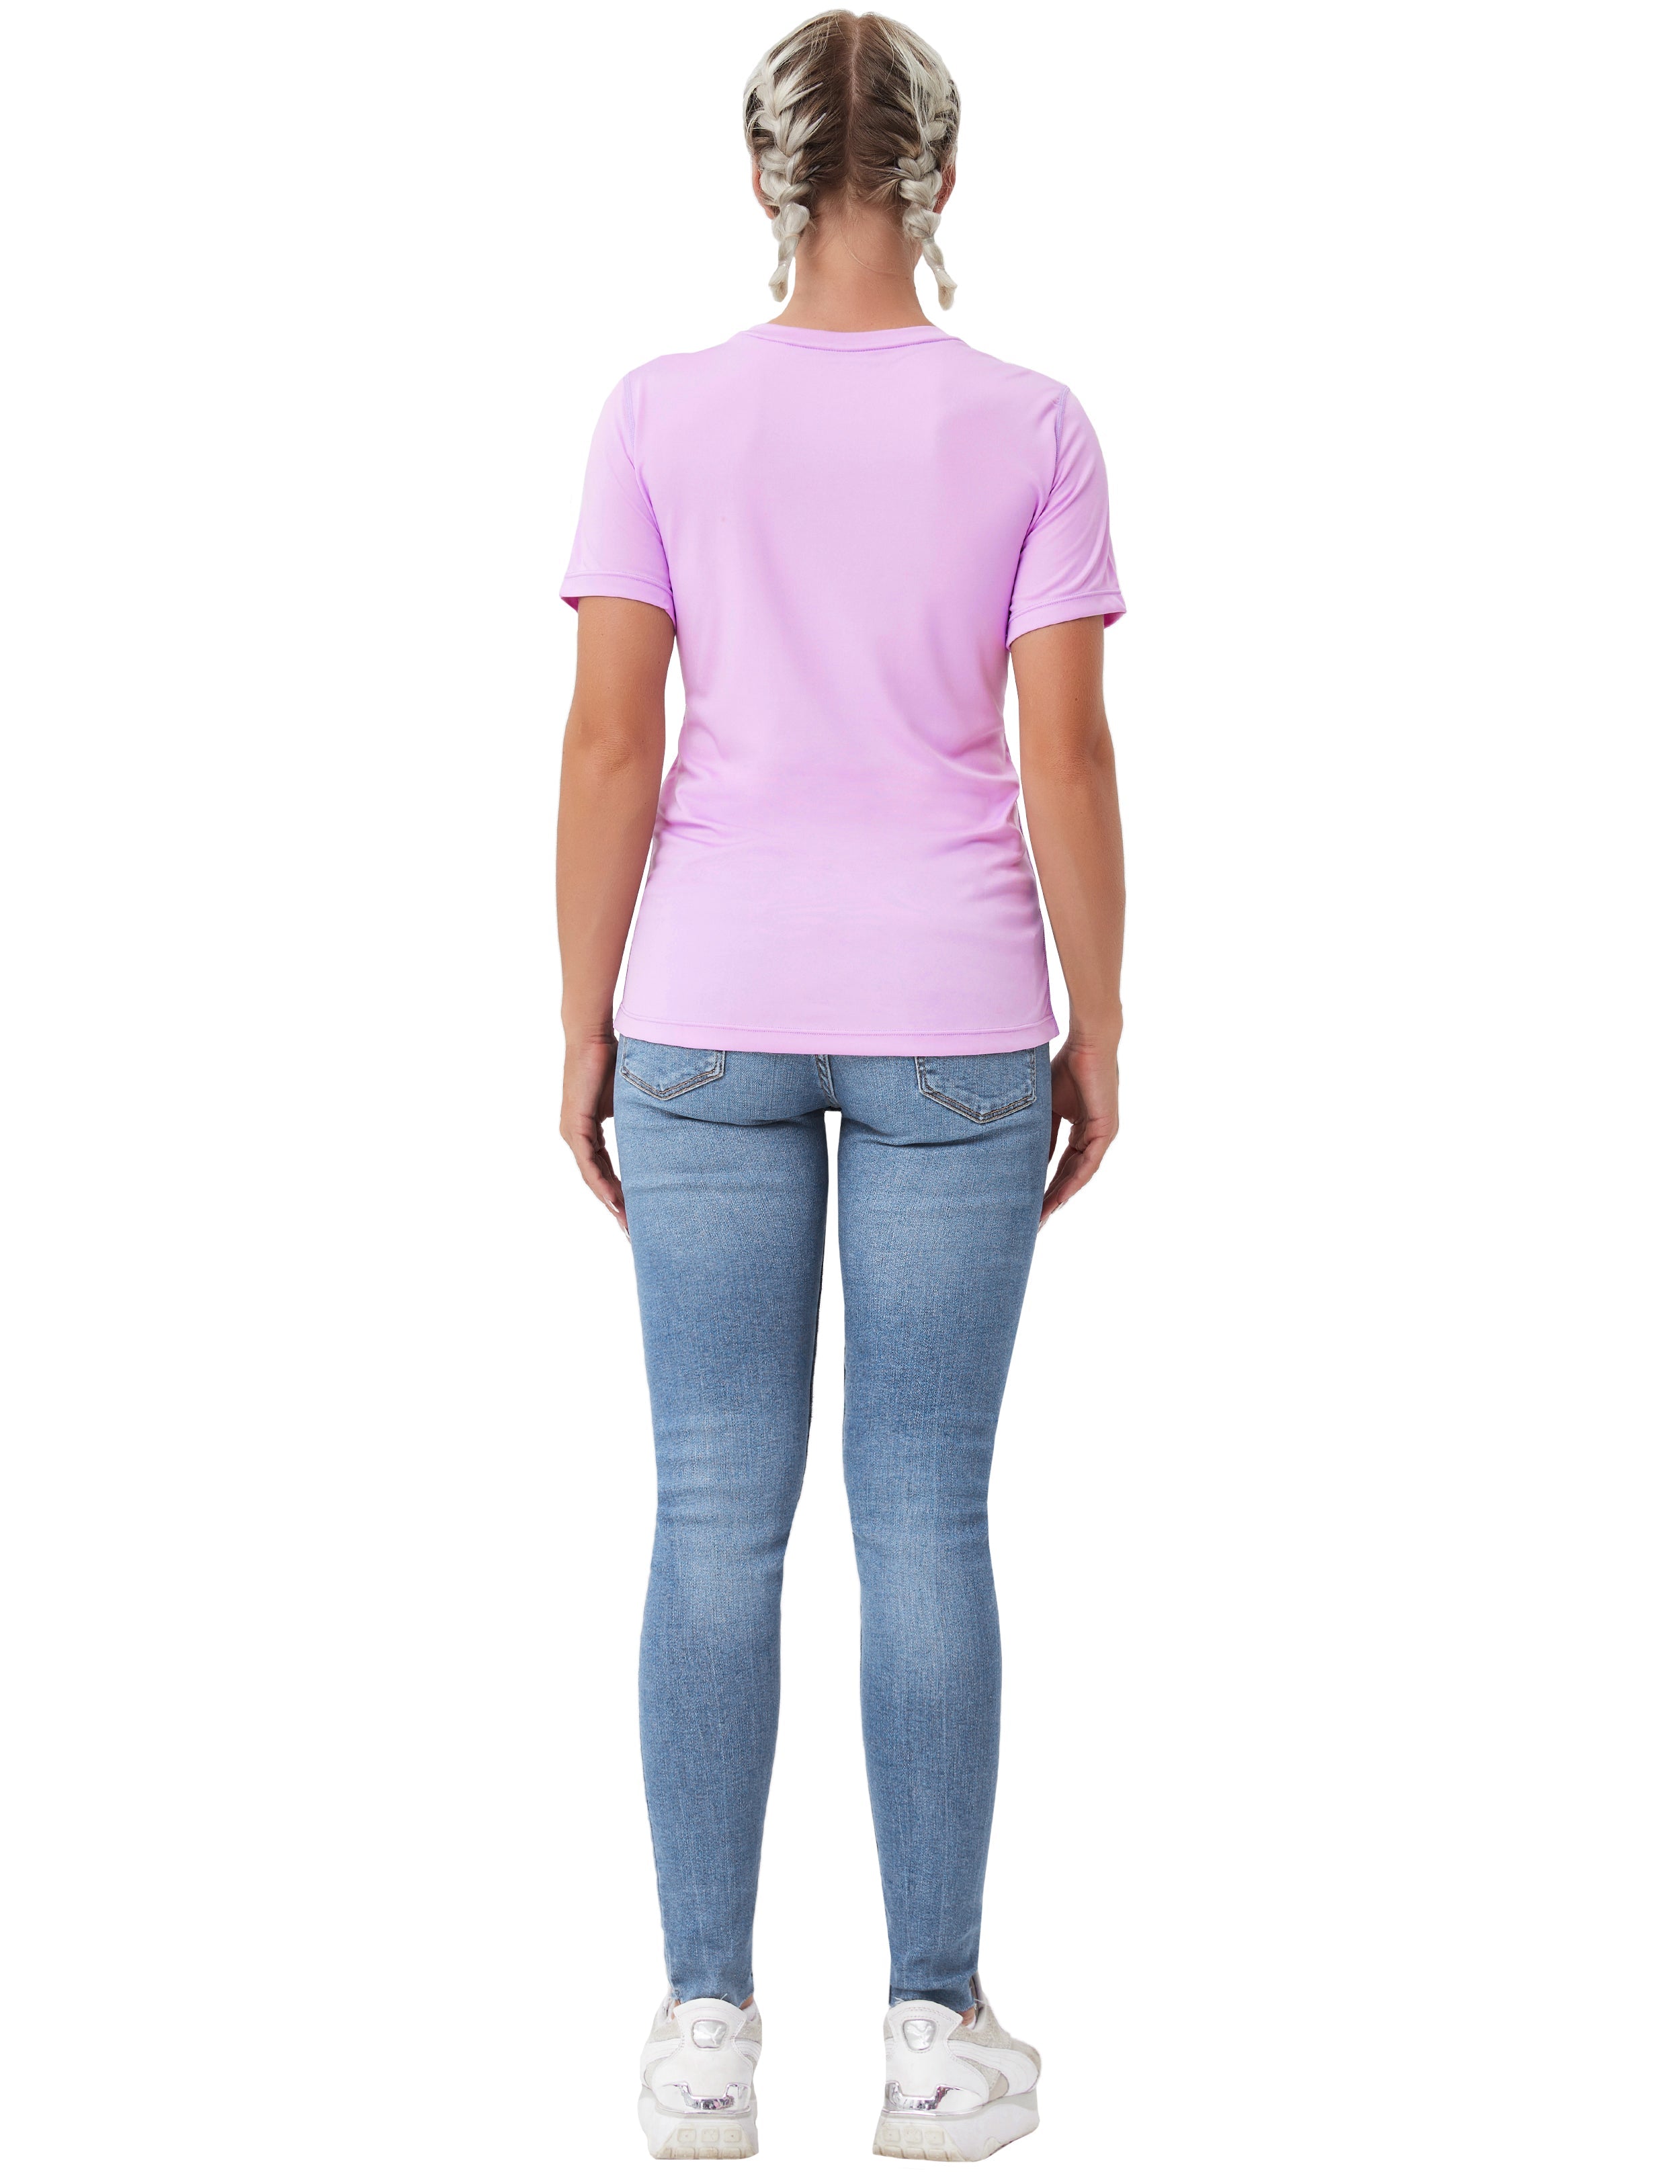 Short Sleeve Athletic Shirts purple_Pilates